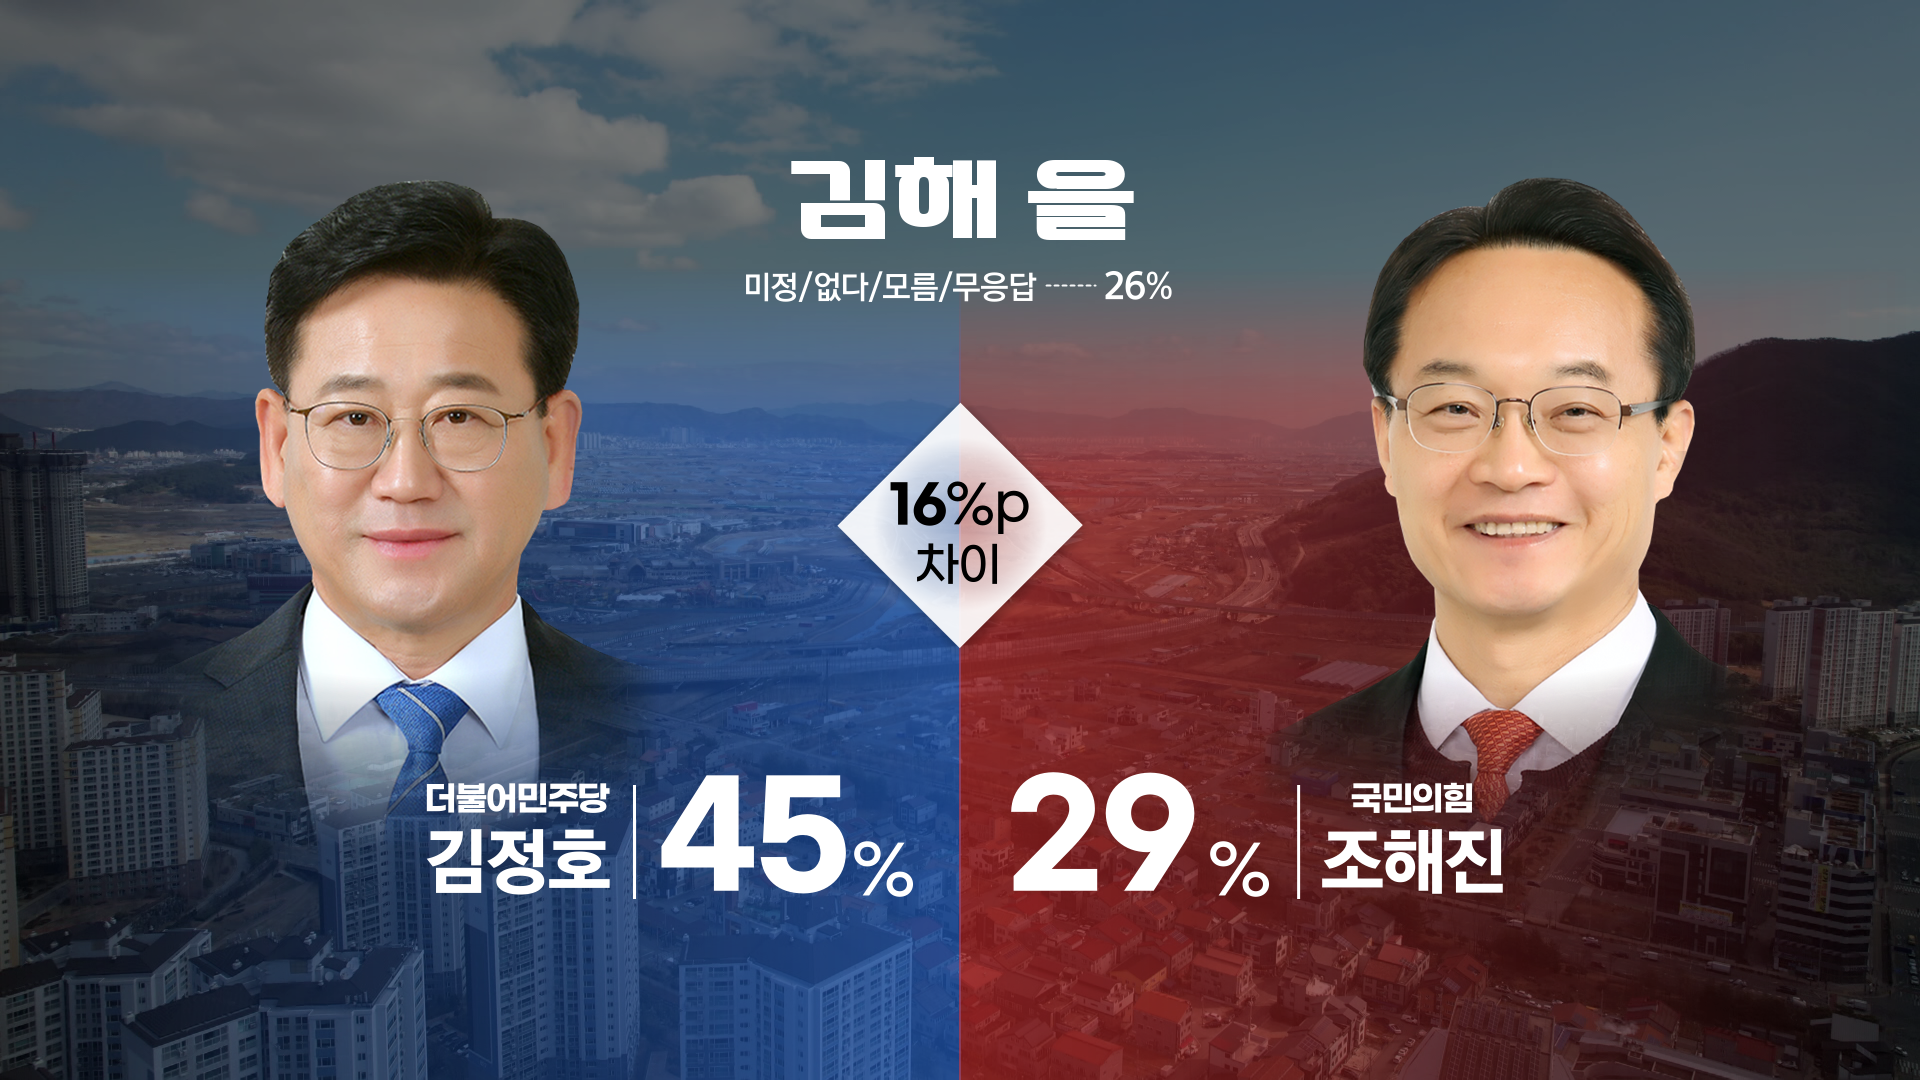 ‘김해 을’ 2차 여론조사 후보자 가상대결